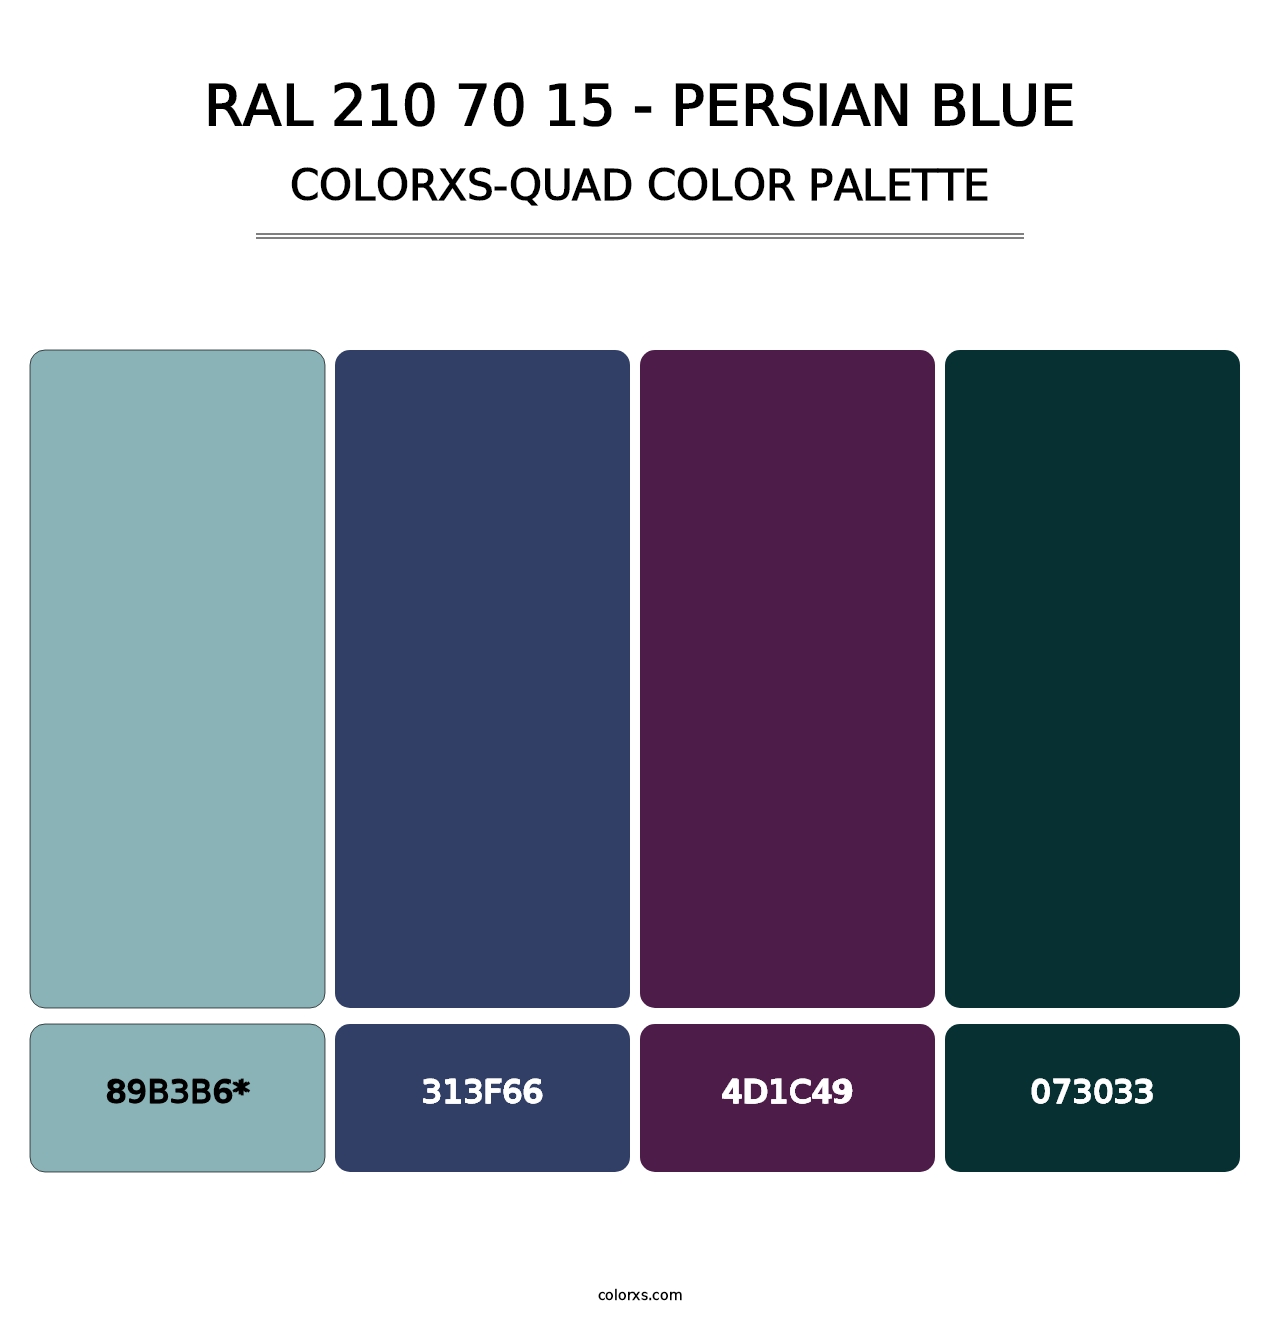 RAL 210 70 15 - Persian Blue - Colorxs Quad Palette